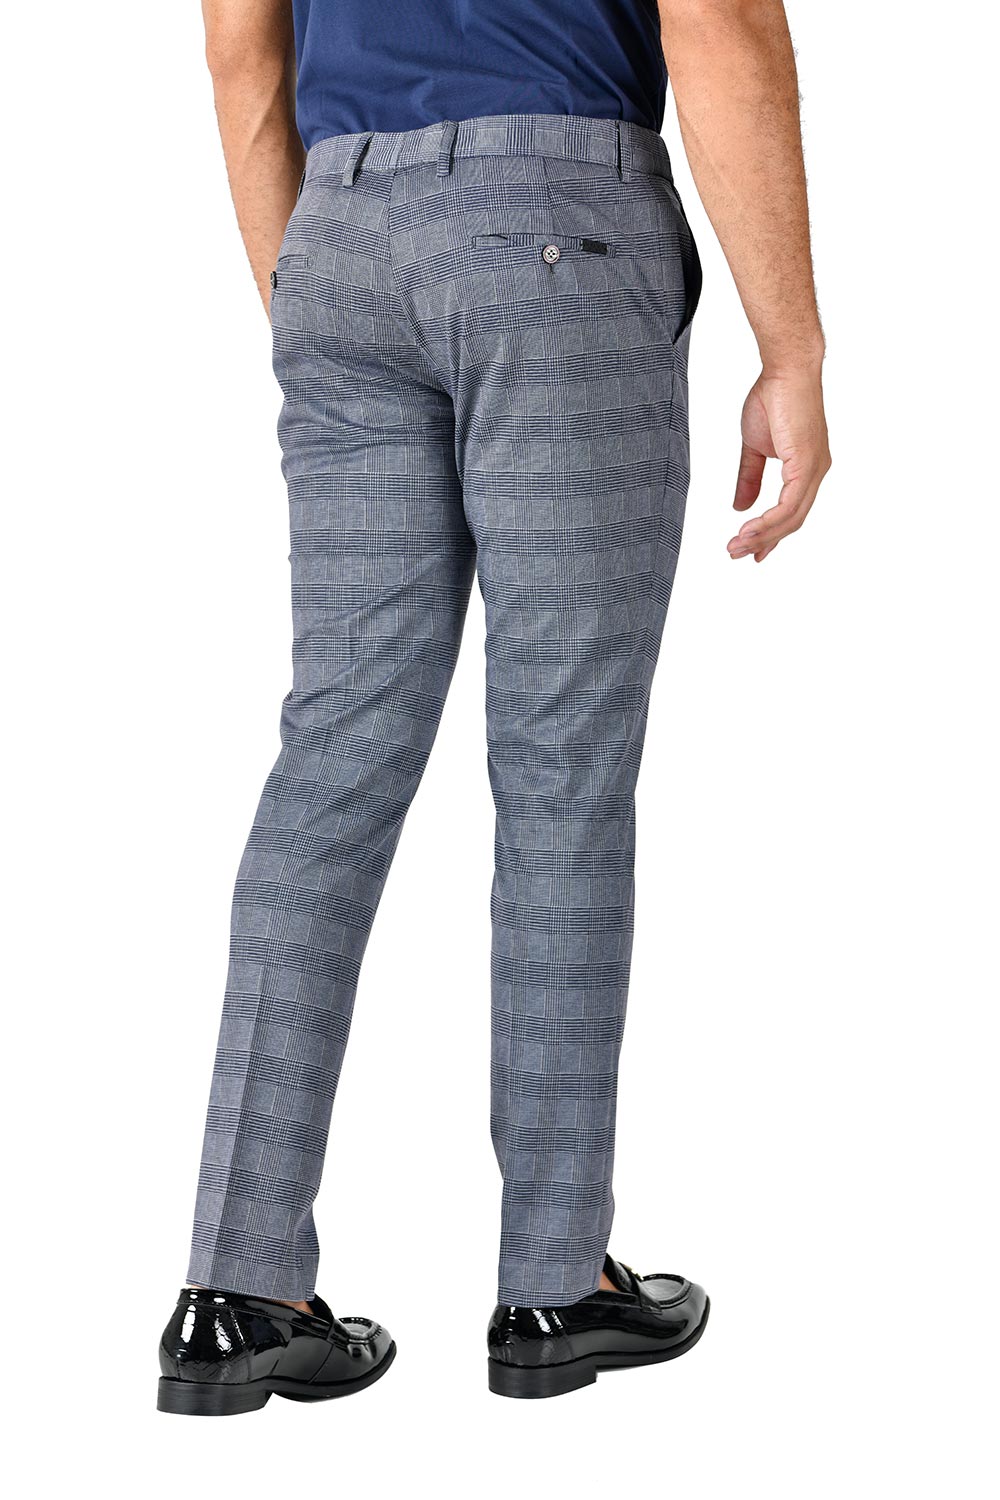 BARABAS men's checkered plaid grey chino pants CP132